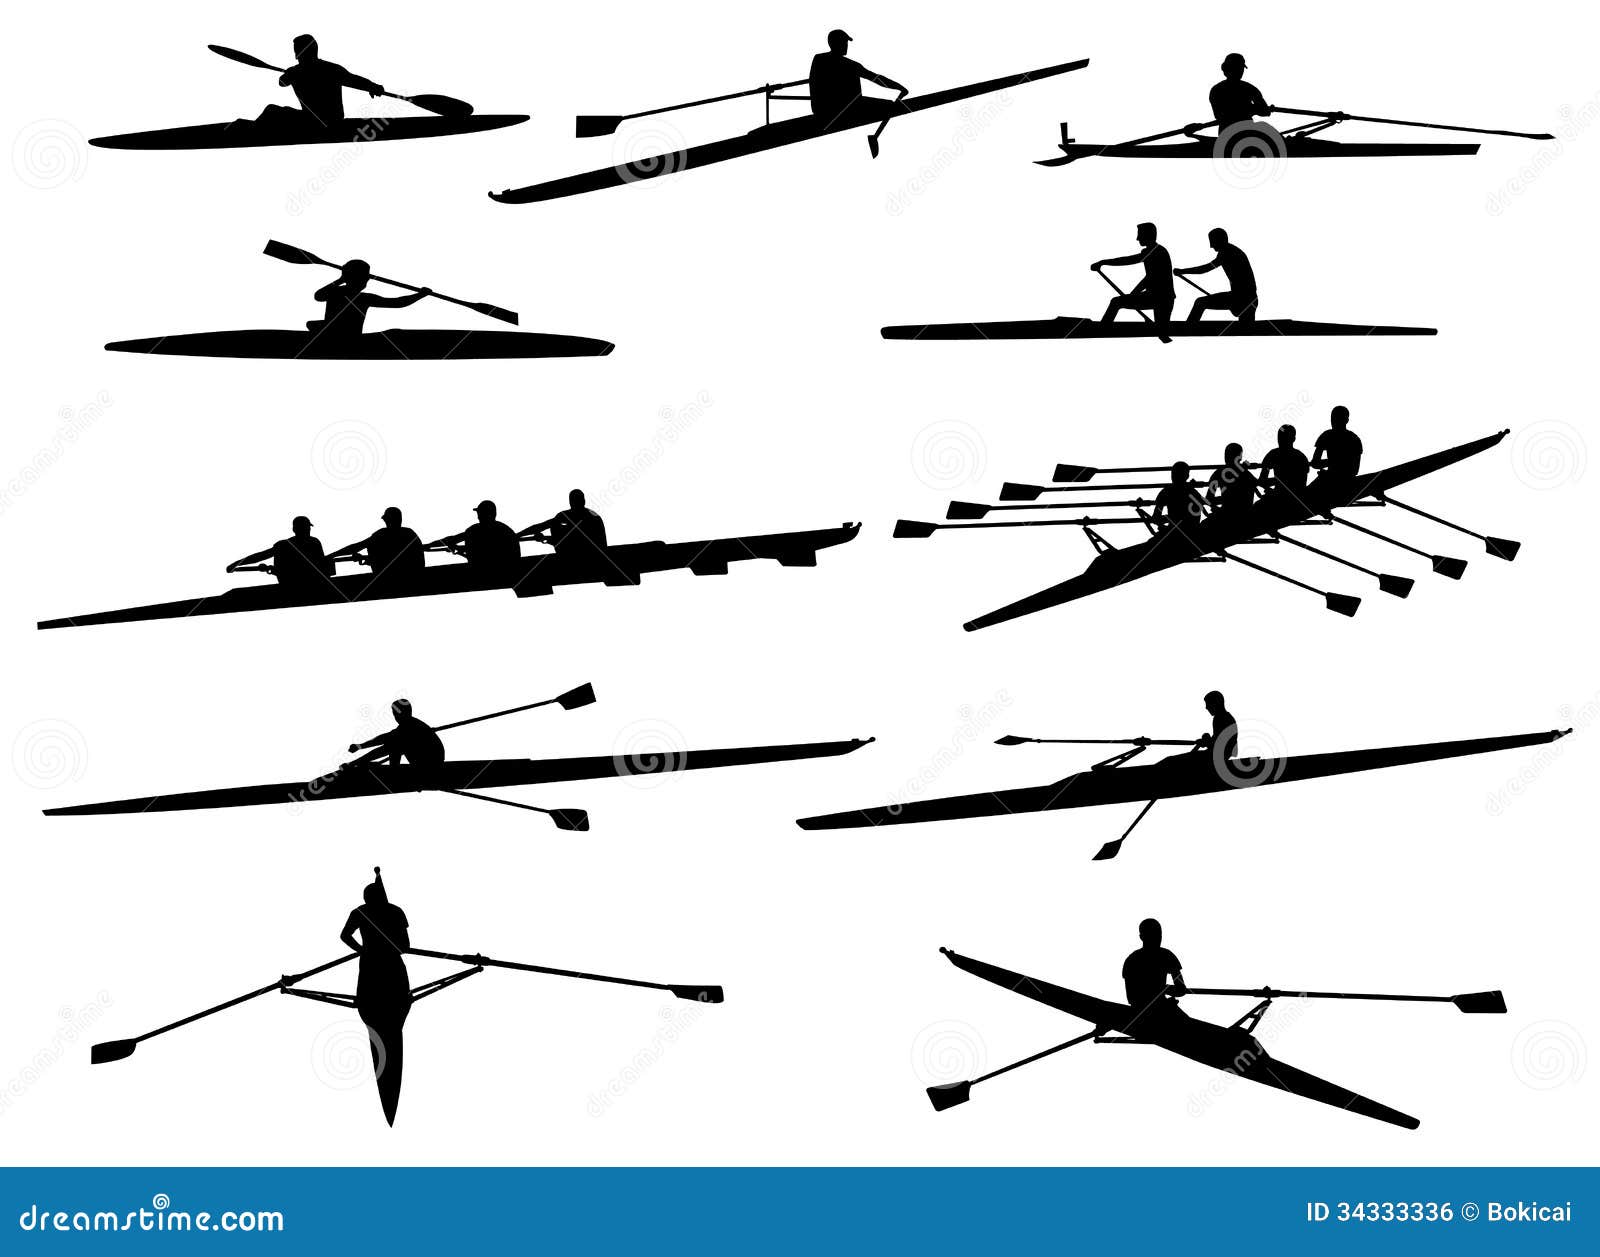 Rowing Clip Art